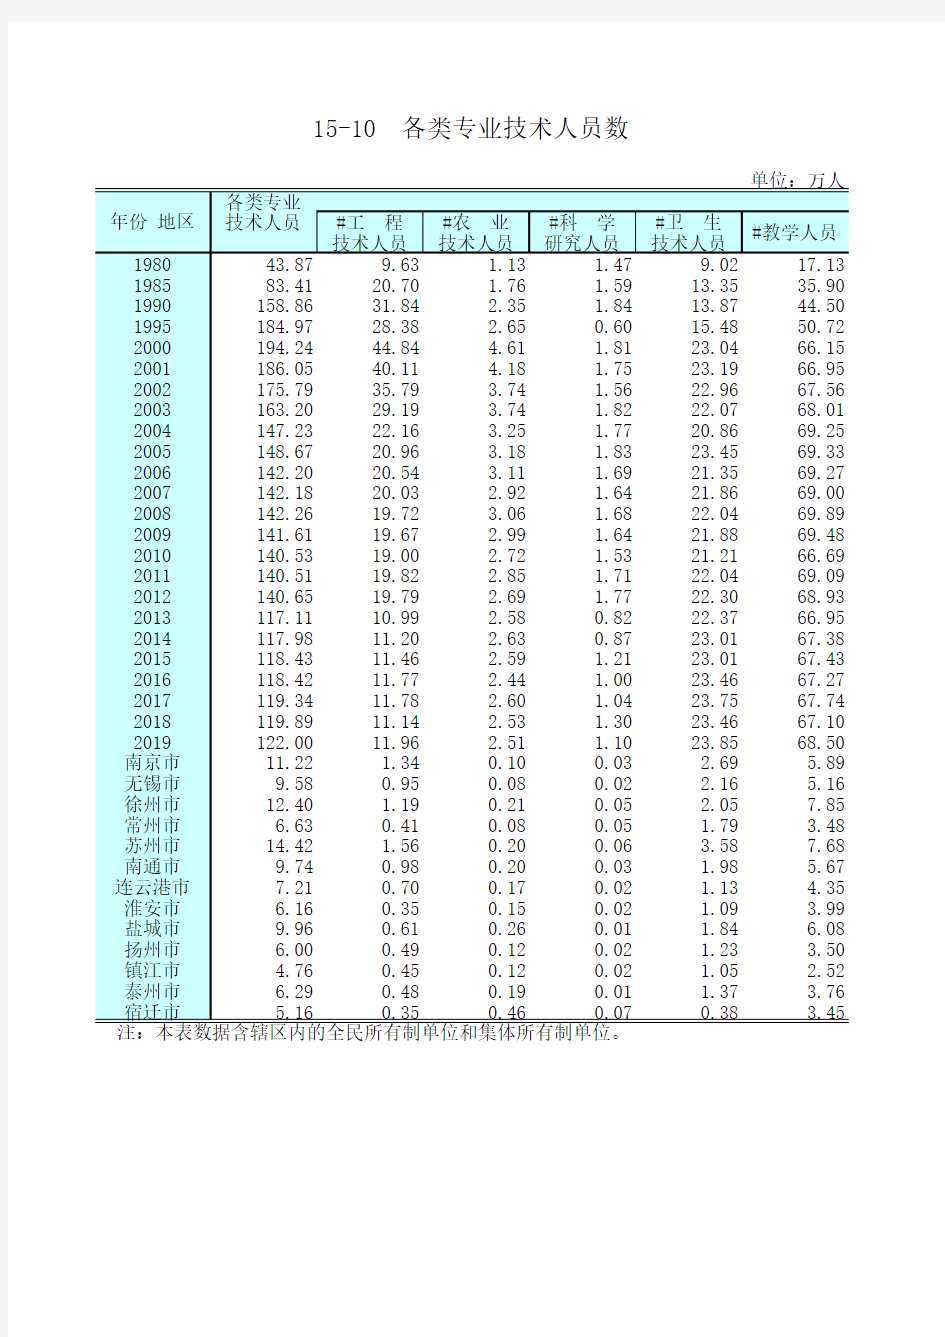 江苏统计年鉴2020社会经济发展指标：各类专业技术人员数